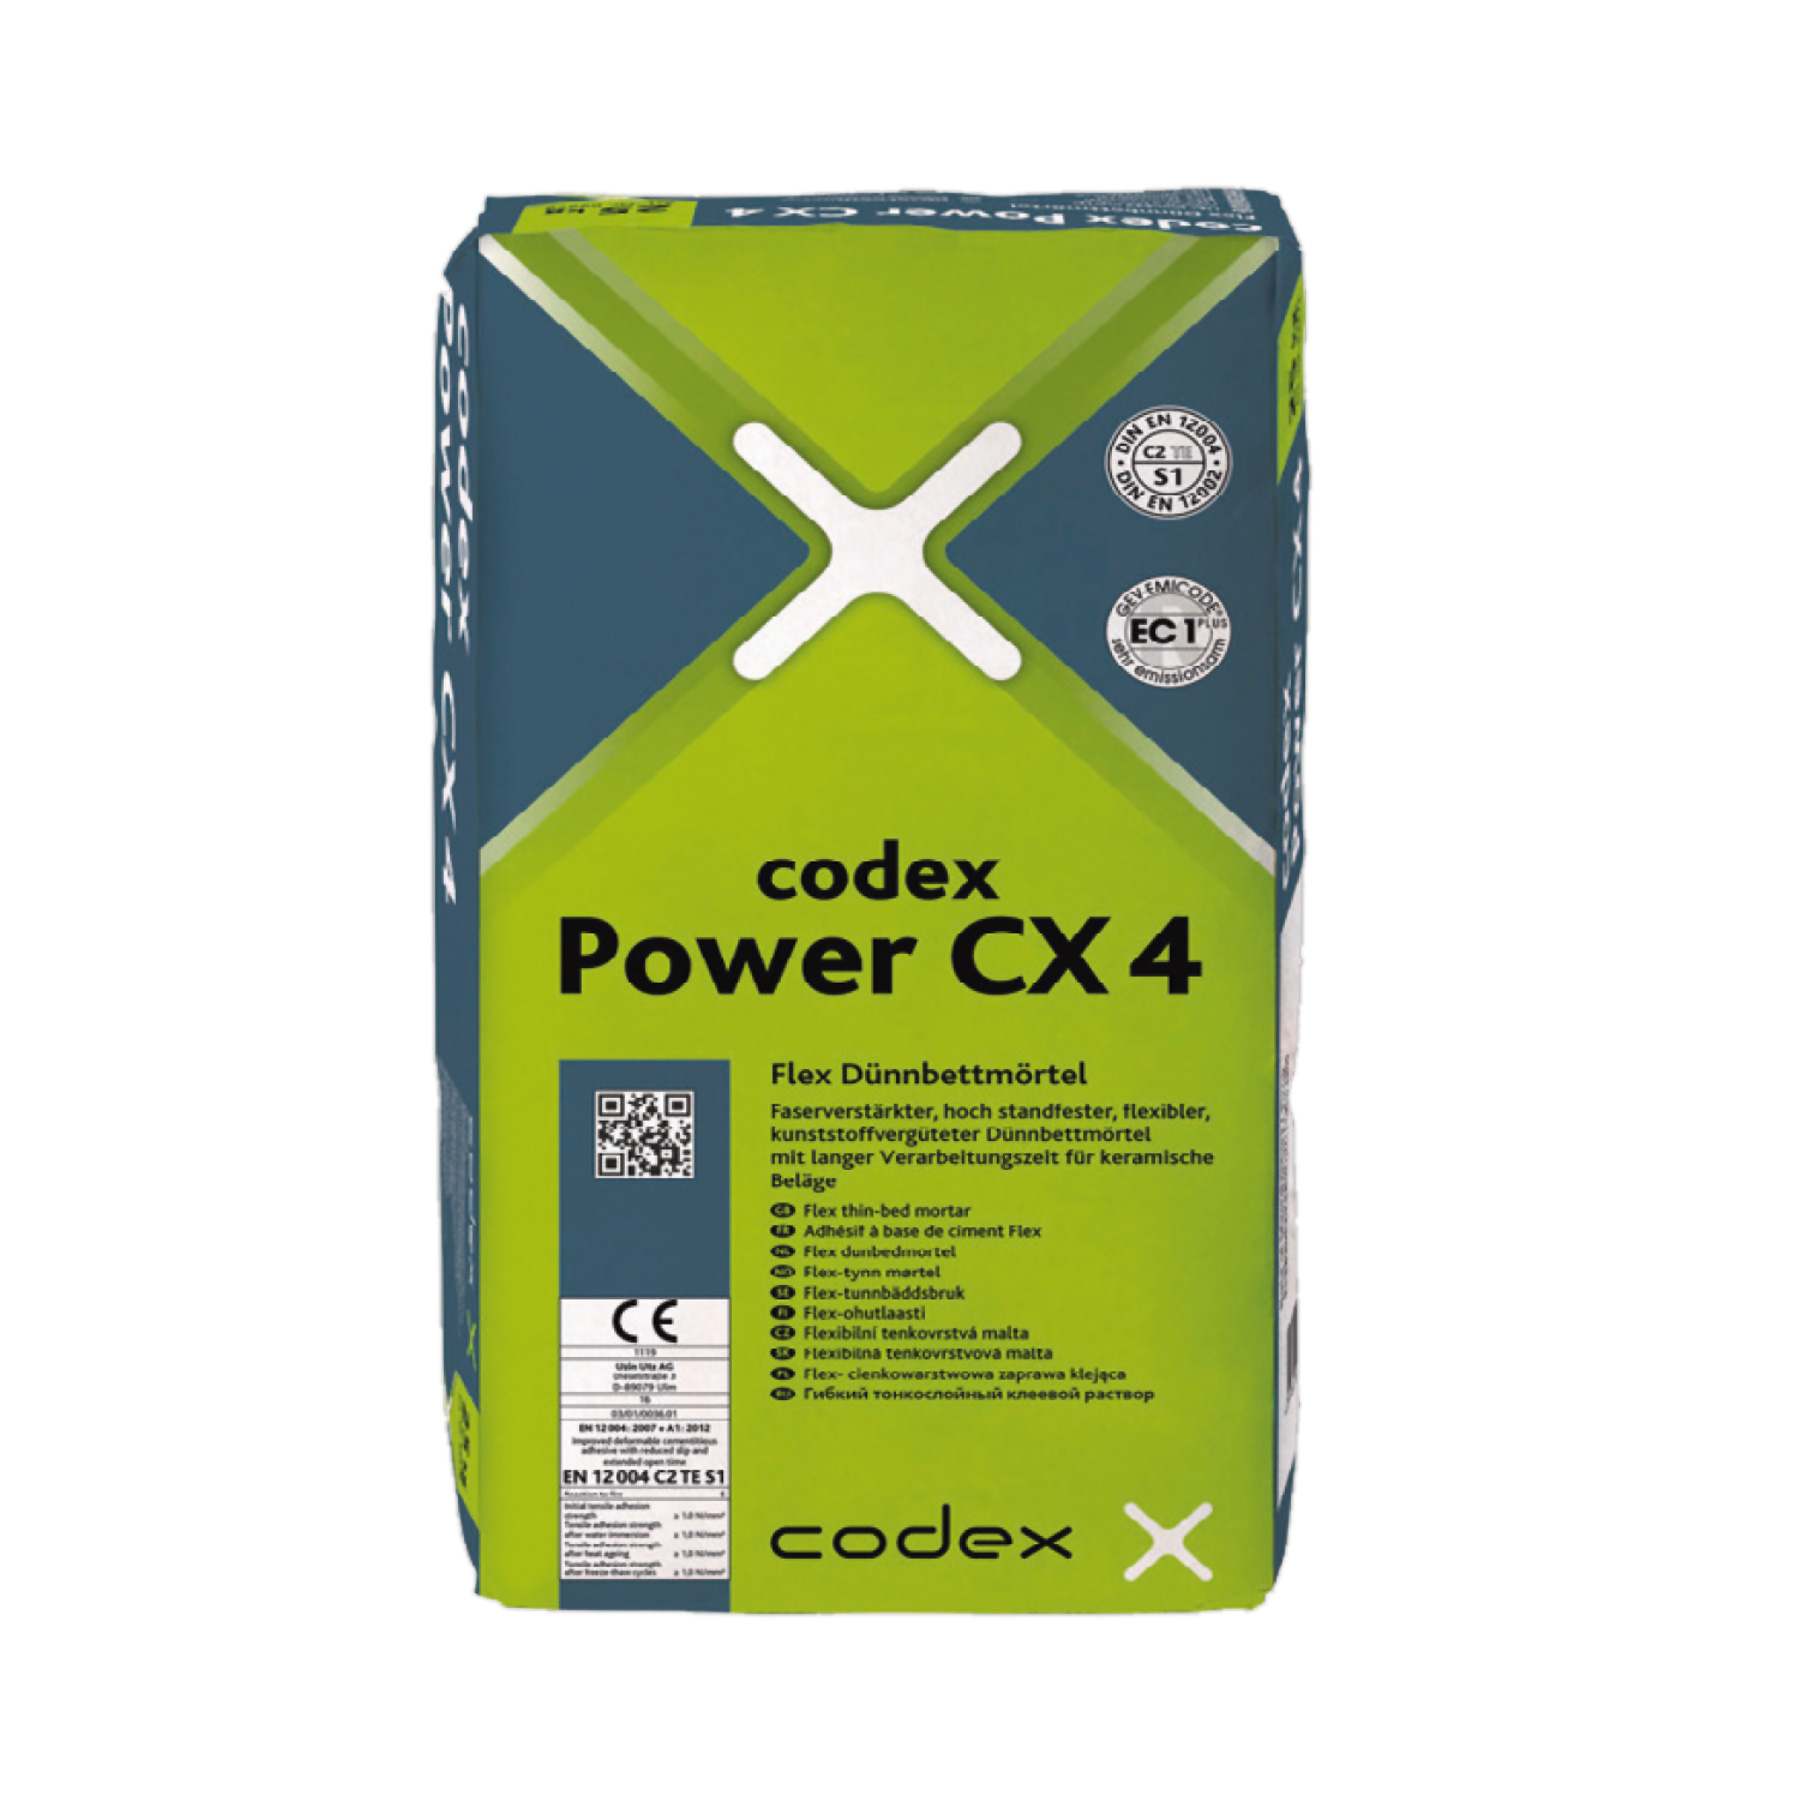 codex Power CX 4 Flex-Dünnbettmörtel - 25kg